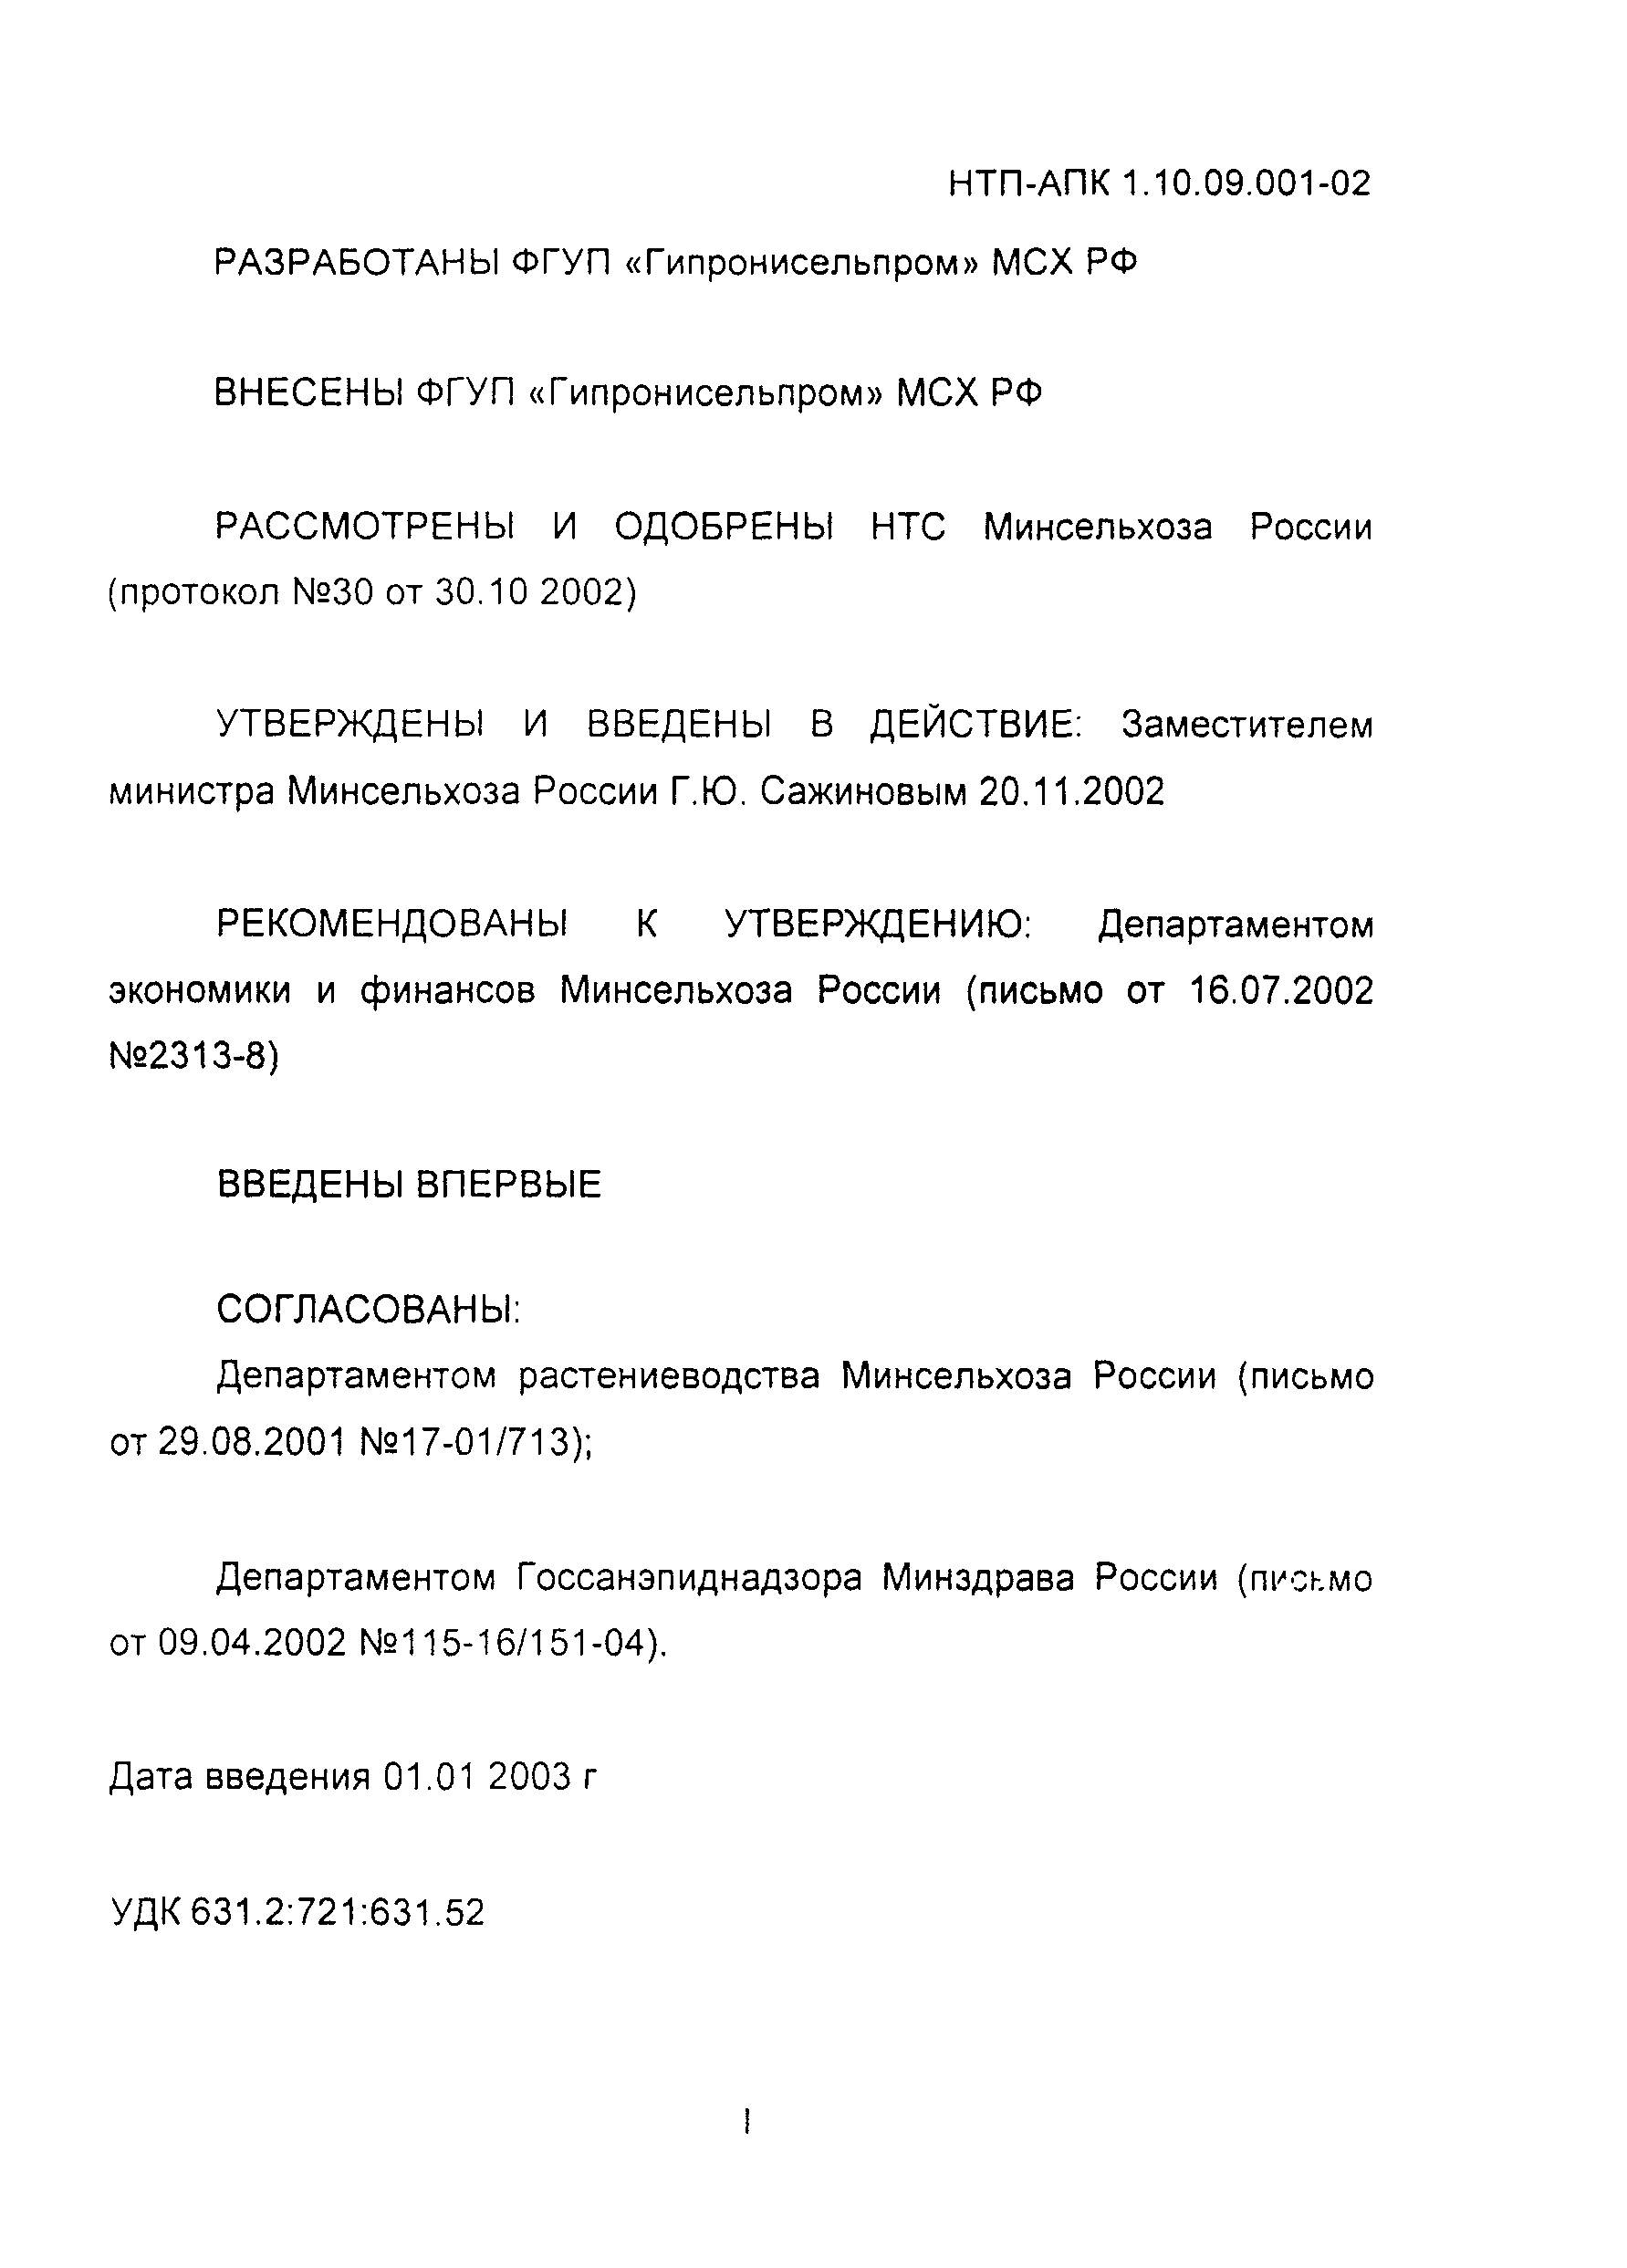 НТП-АПК 1.10.09.001-02